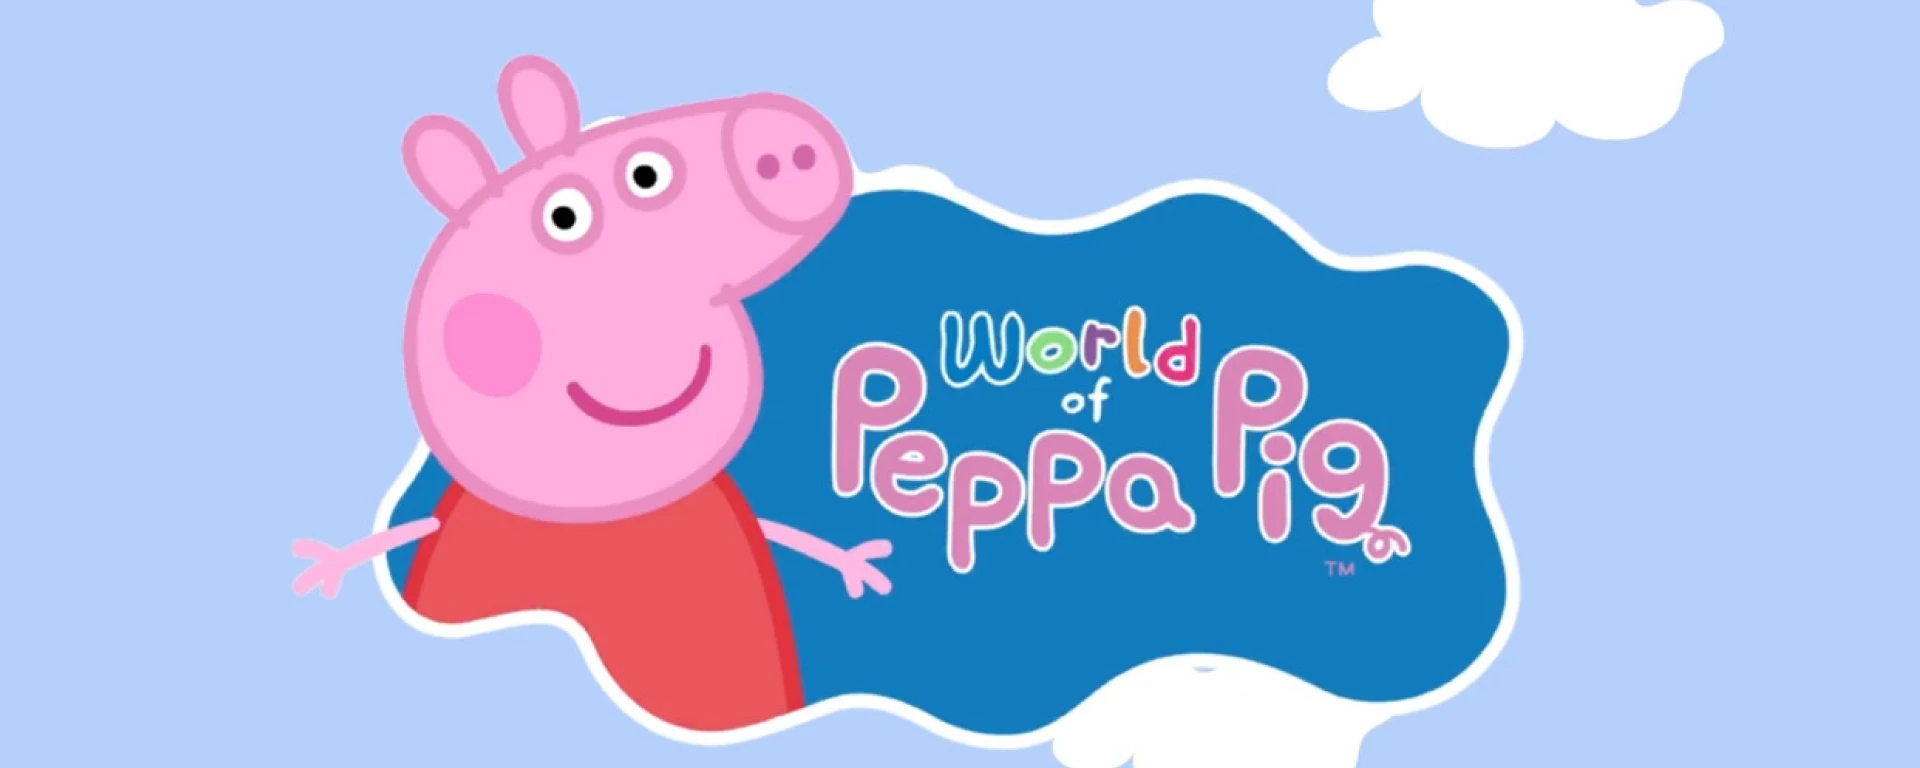 World of Peppa Pig thumbnail